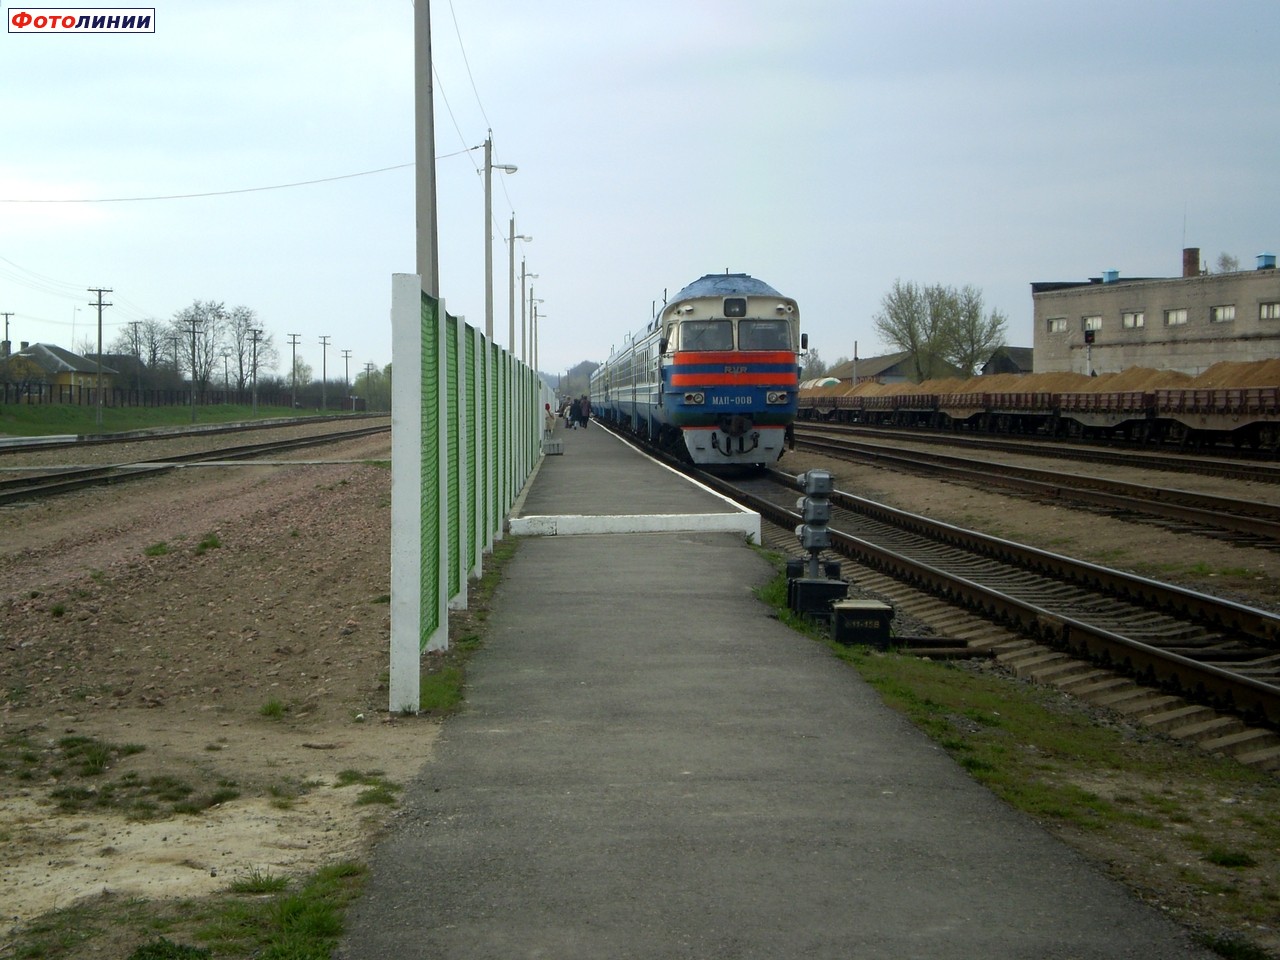 Пассажирская платформа (вид в сторону путевого поста Голя)